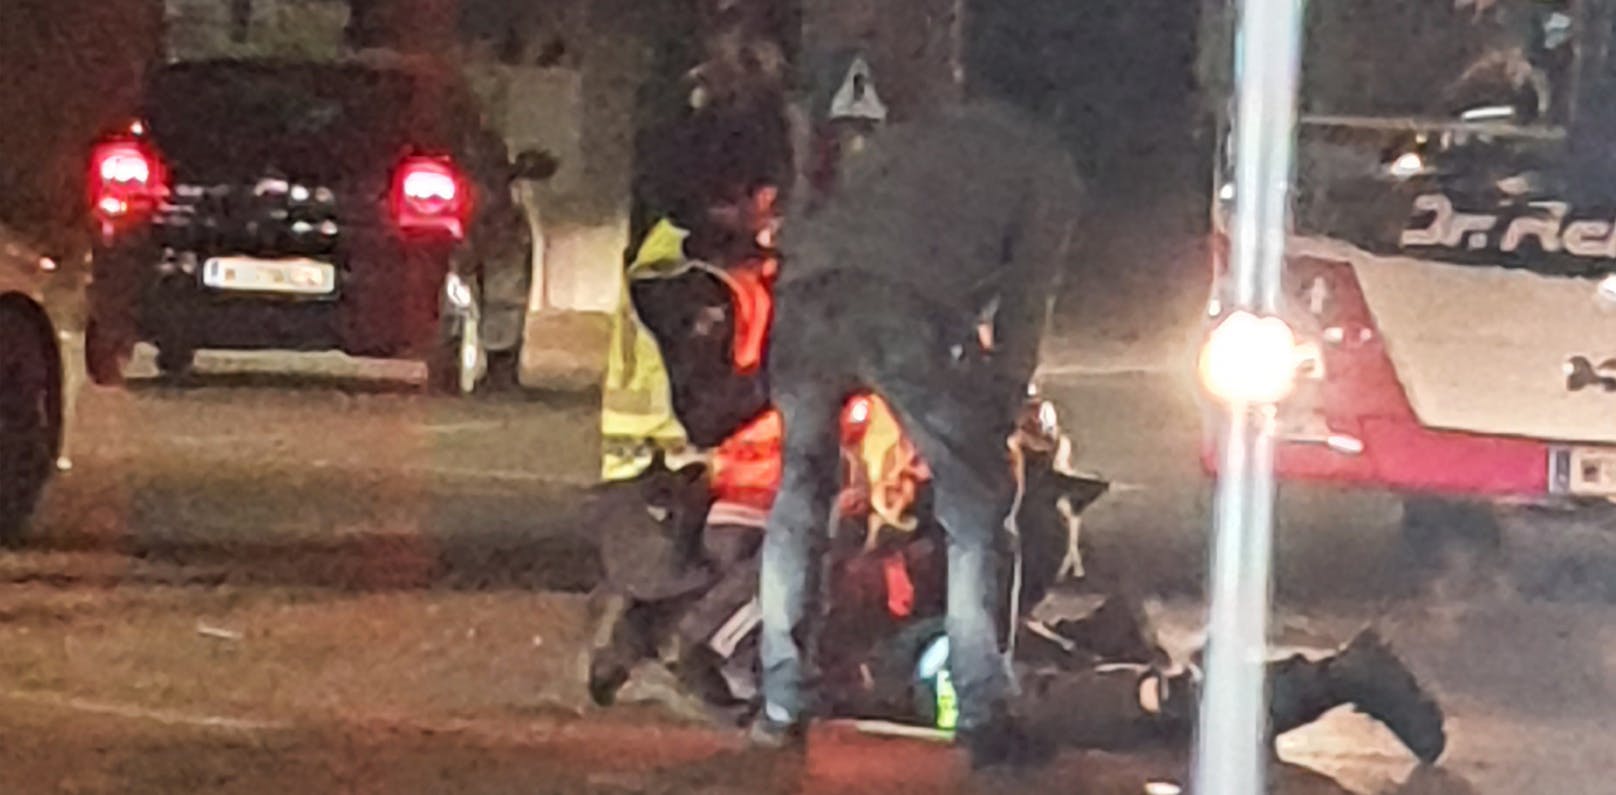 Bild 23: Wiener Polizei regelt Kreuzung, dann läuft Dieb vorbei – <a href="https://www.heute.at/s/polizei-regelt-kreuzung-dann-laeuft-ladendieb-vorbei-100173221">Weiterlesen &gt;&gt;&gt;</a>